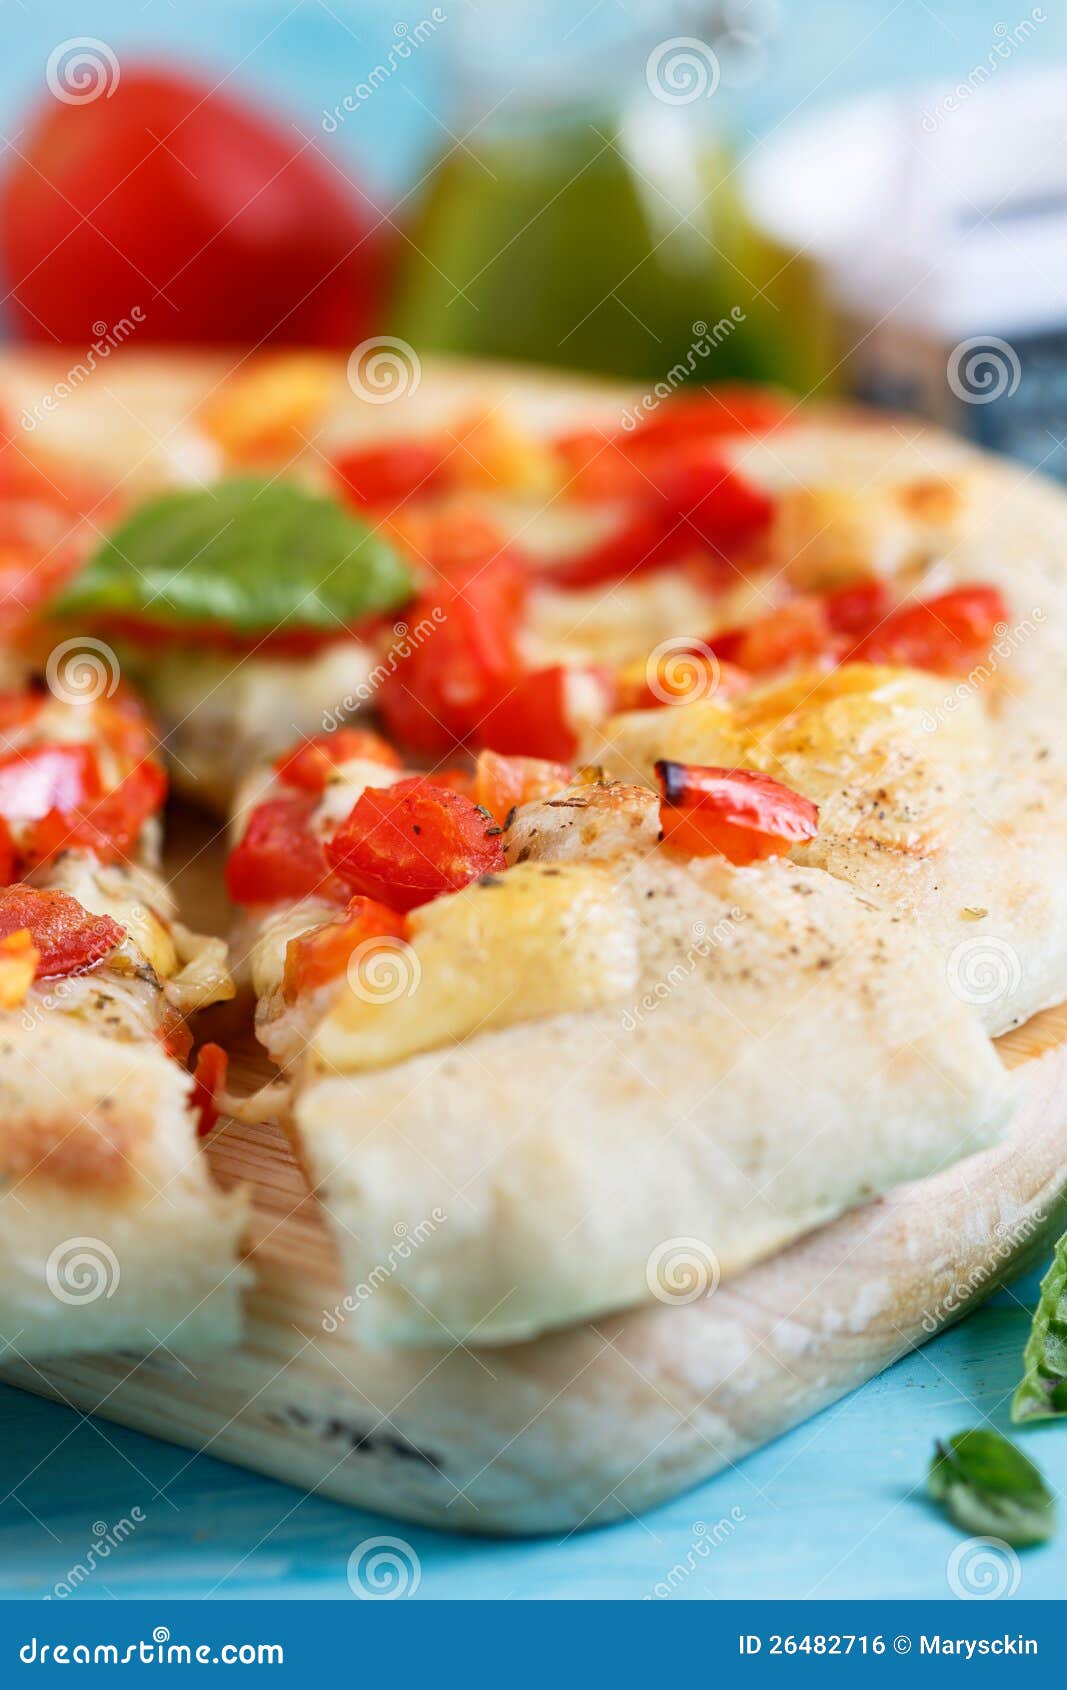 тесто на пиццу неаполитанская фото 110